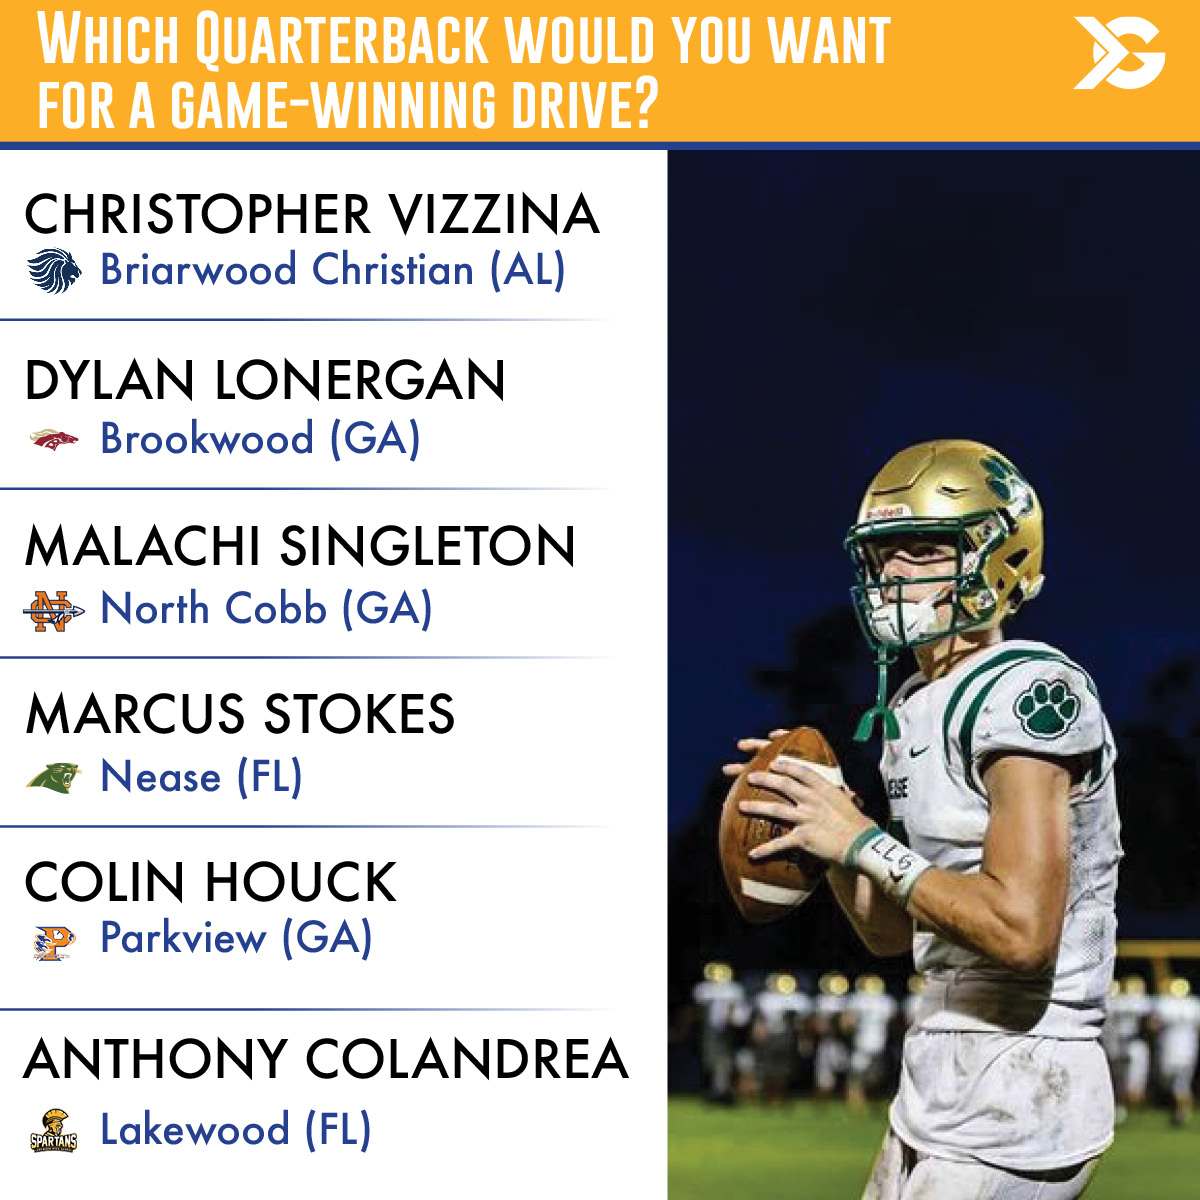 Which quarterback?